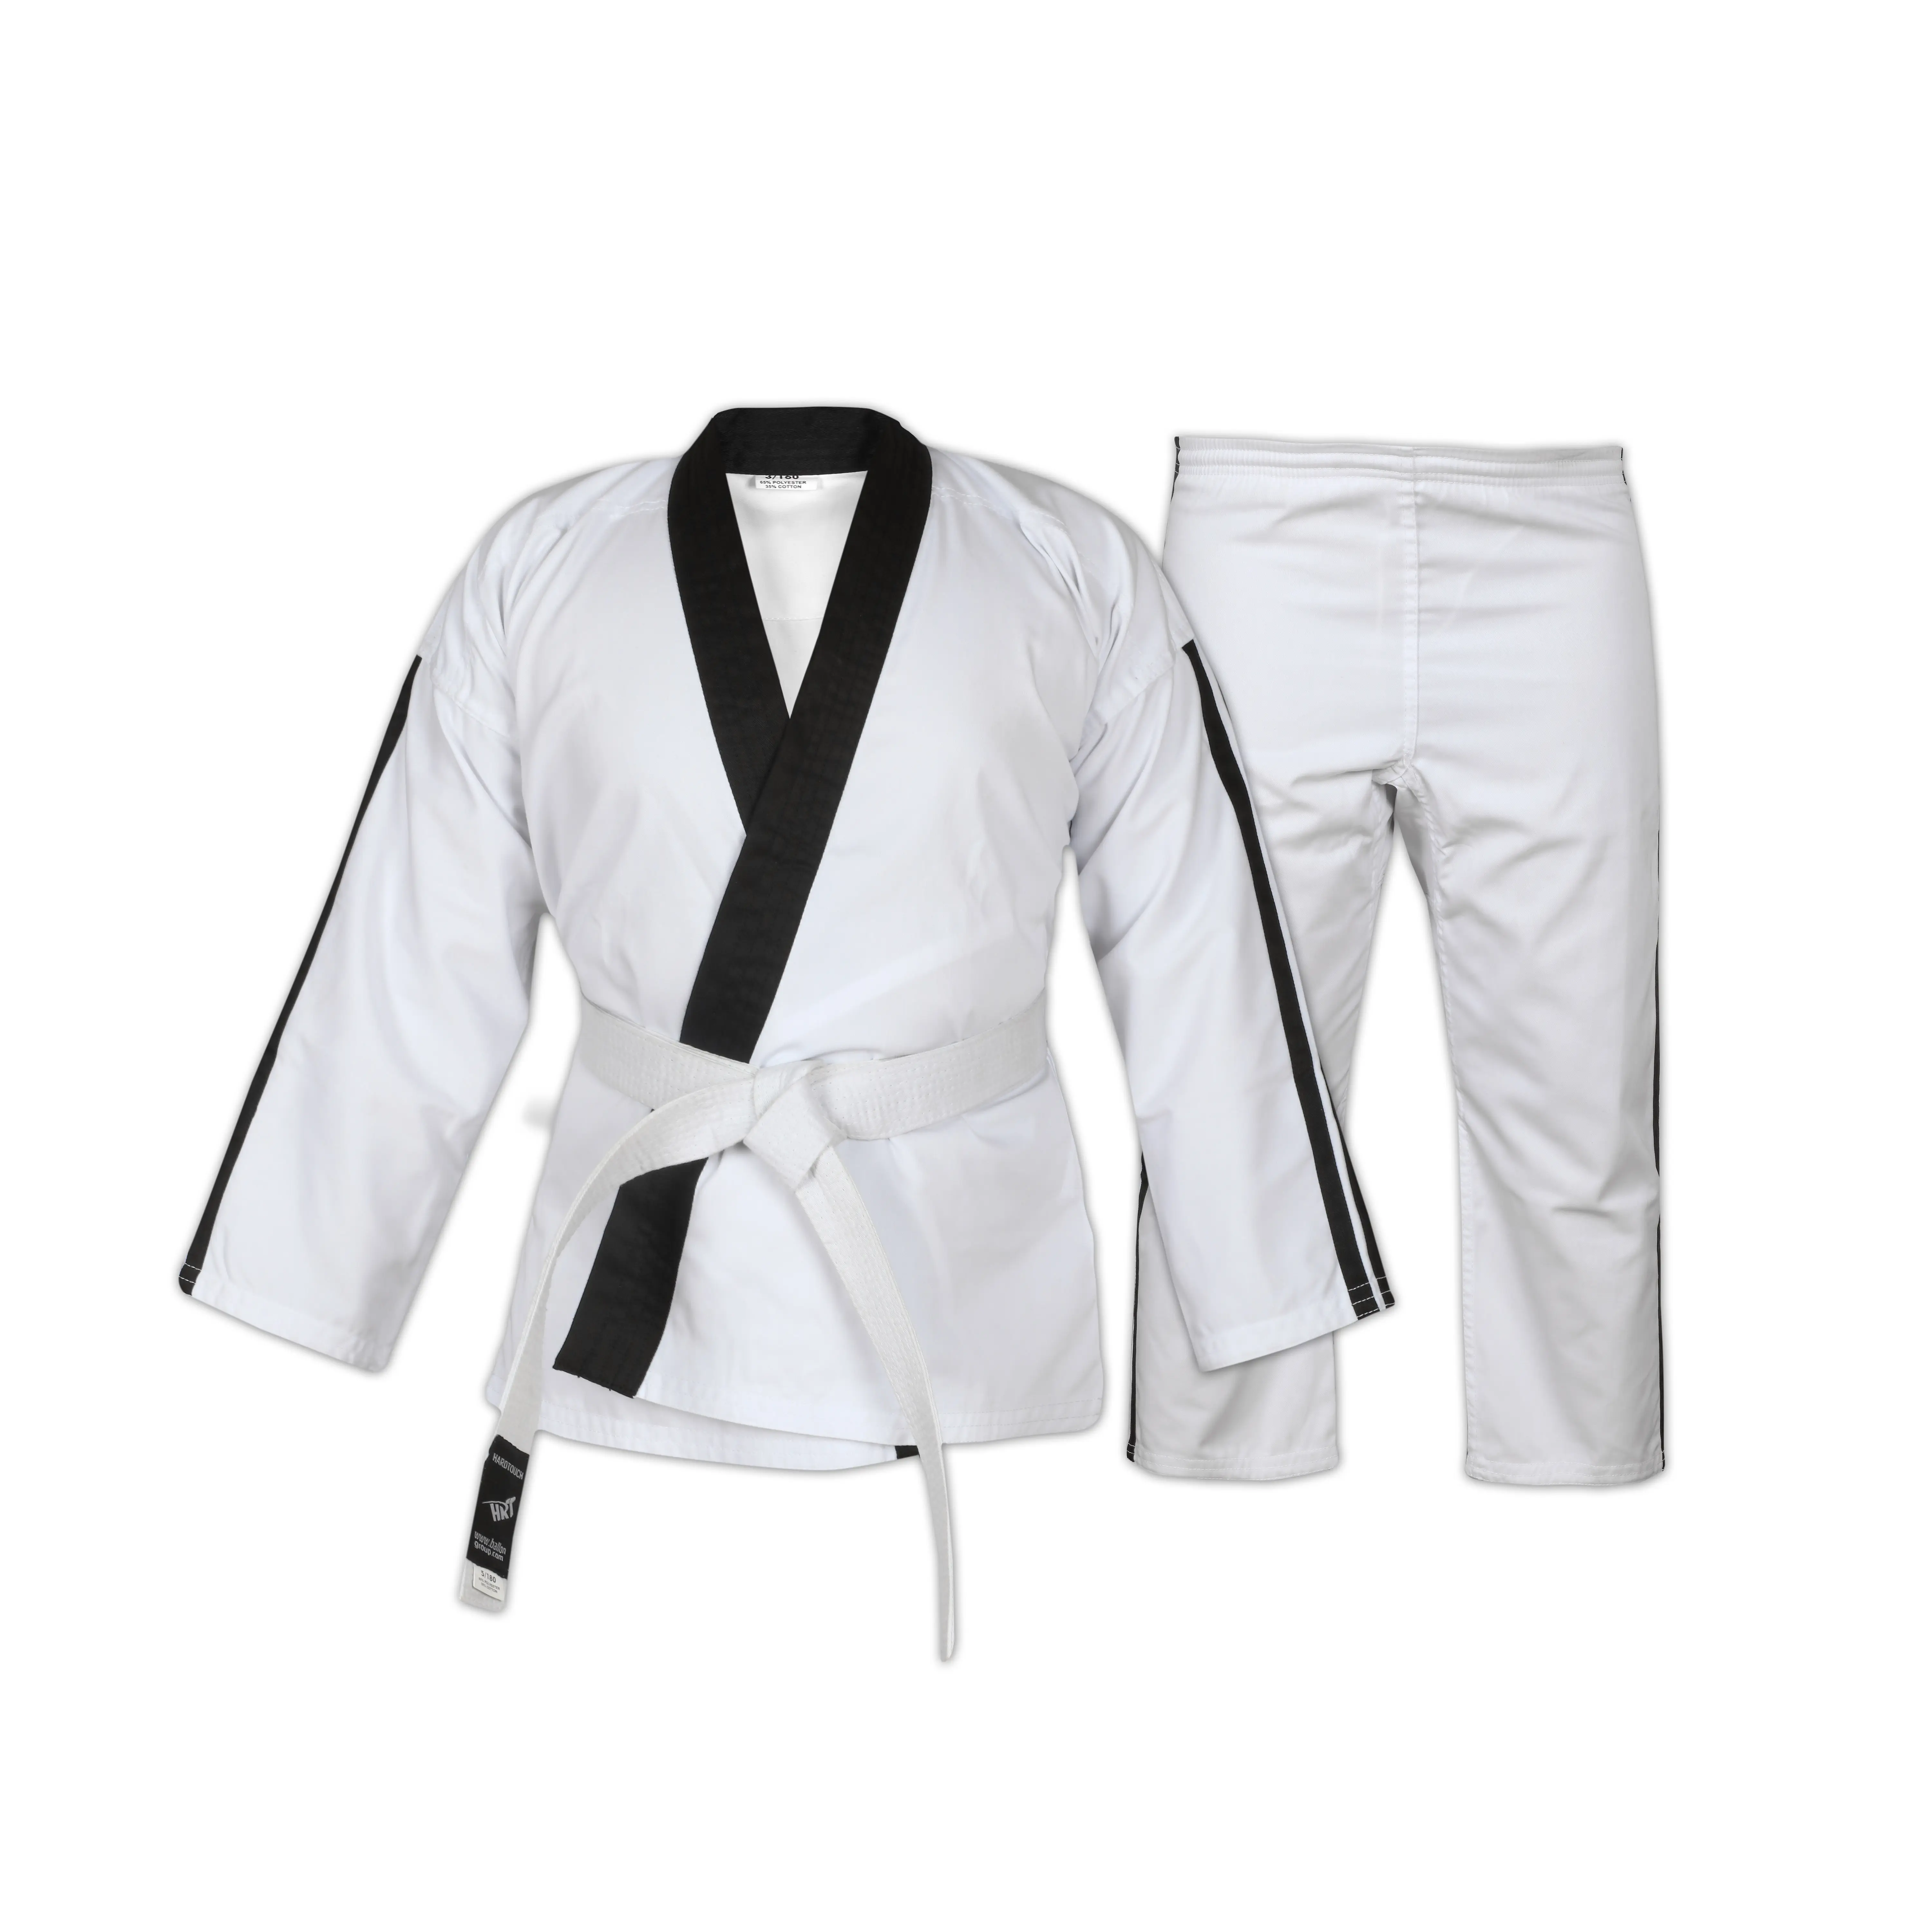 Wholesale kids & adults brazilian jiu jitsu Material 100 % cotton Judo Wear Training Martial Arts Karate Suits, Taekwondo